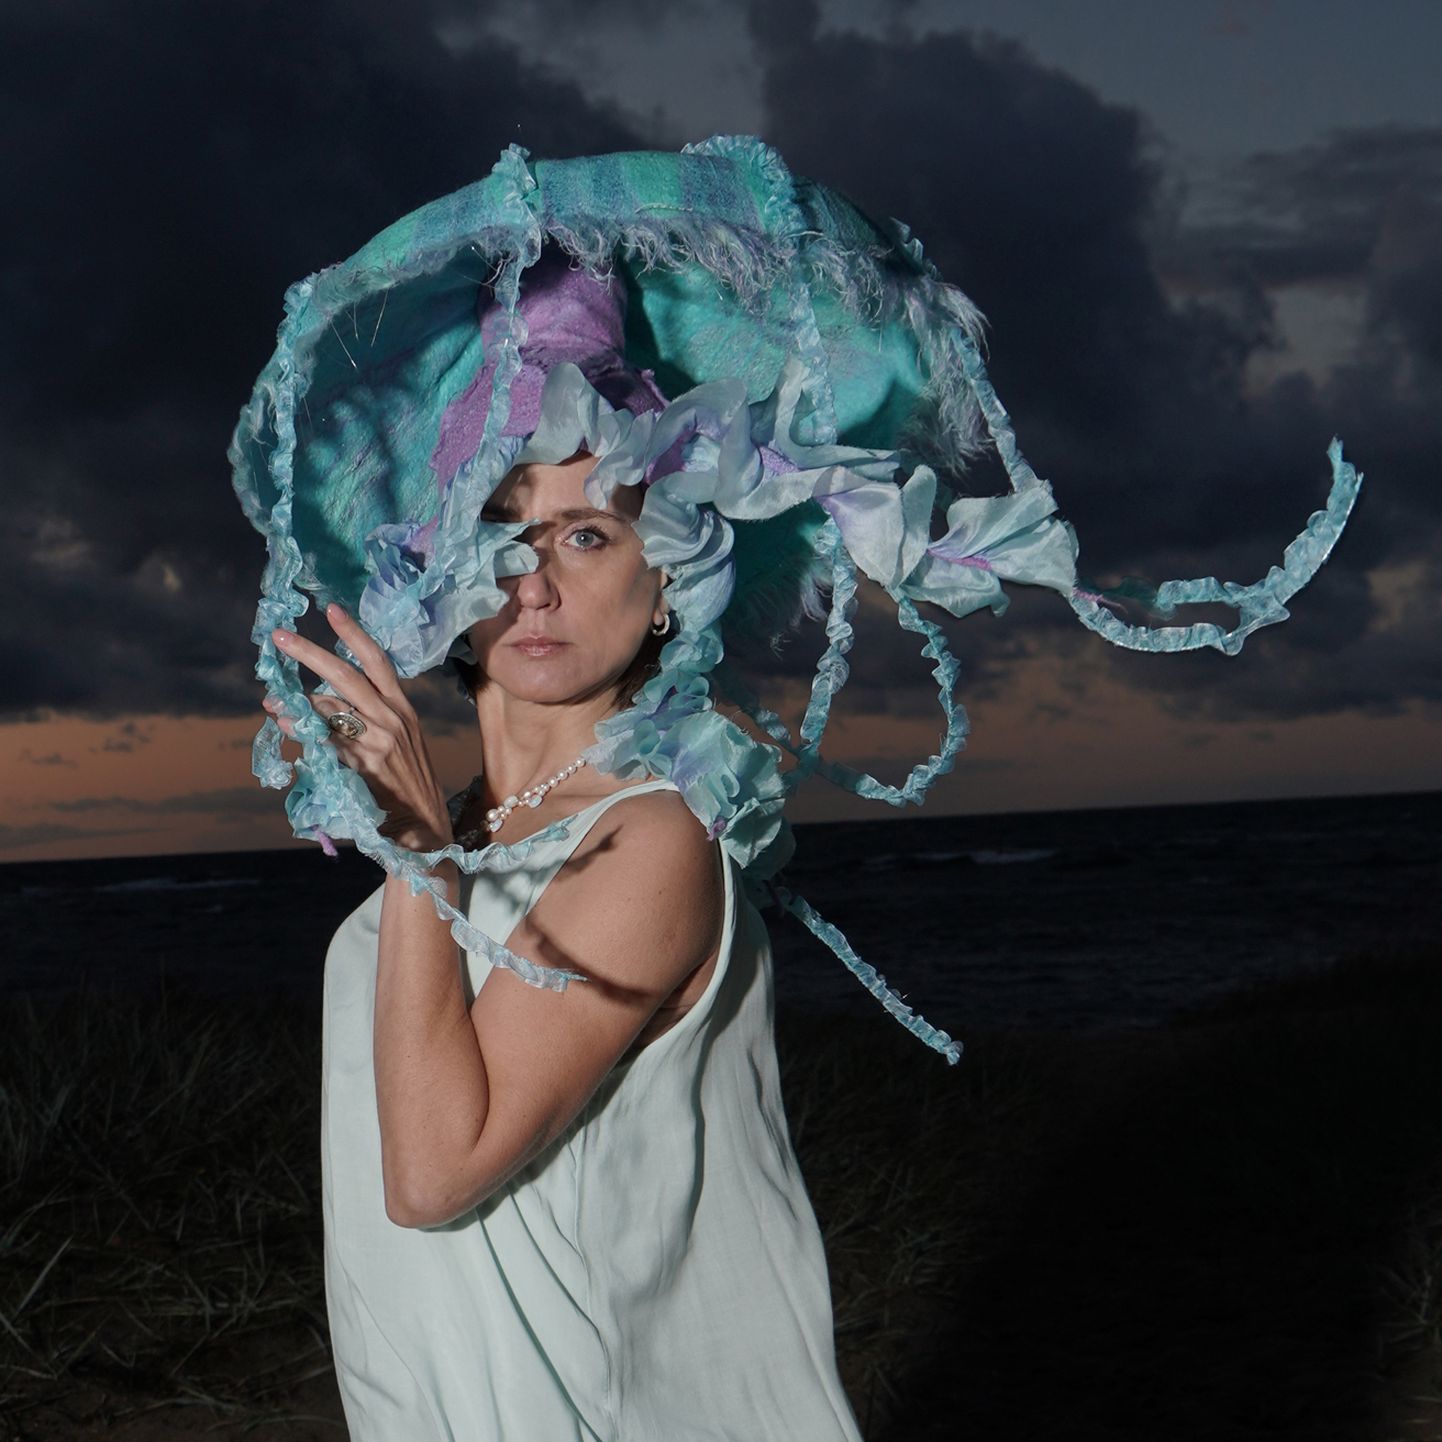 Конкурсная работа «Шляпа-медуза», которая еще и светится в темноте благодаря 
внедренному источнику света и оптоволоконным нитям.